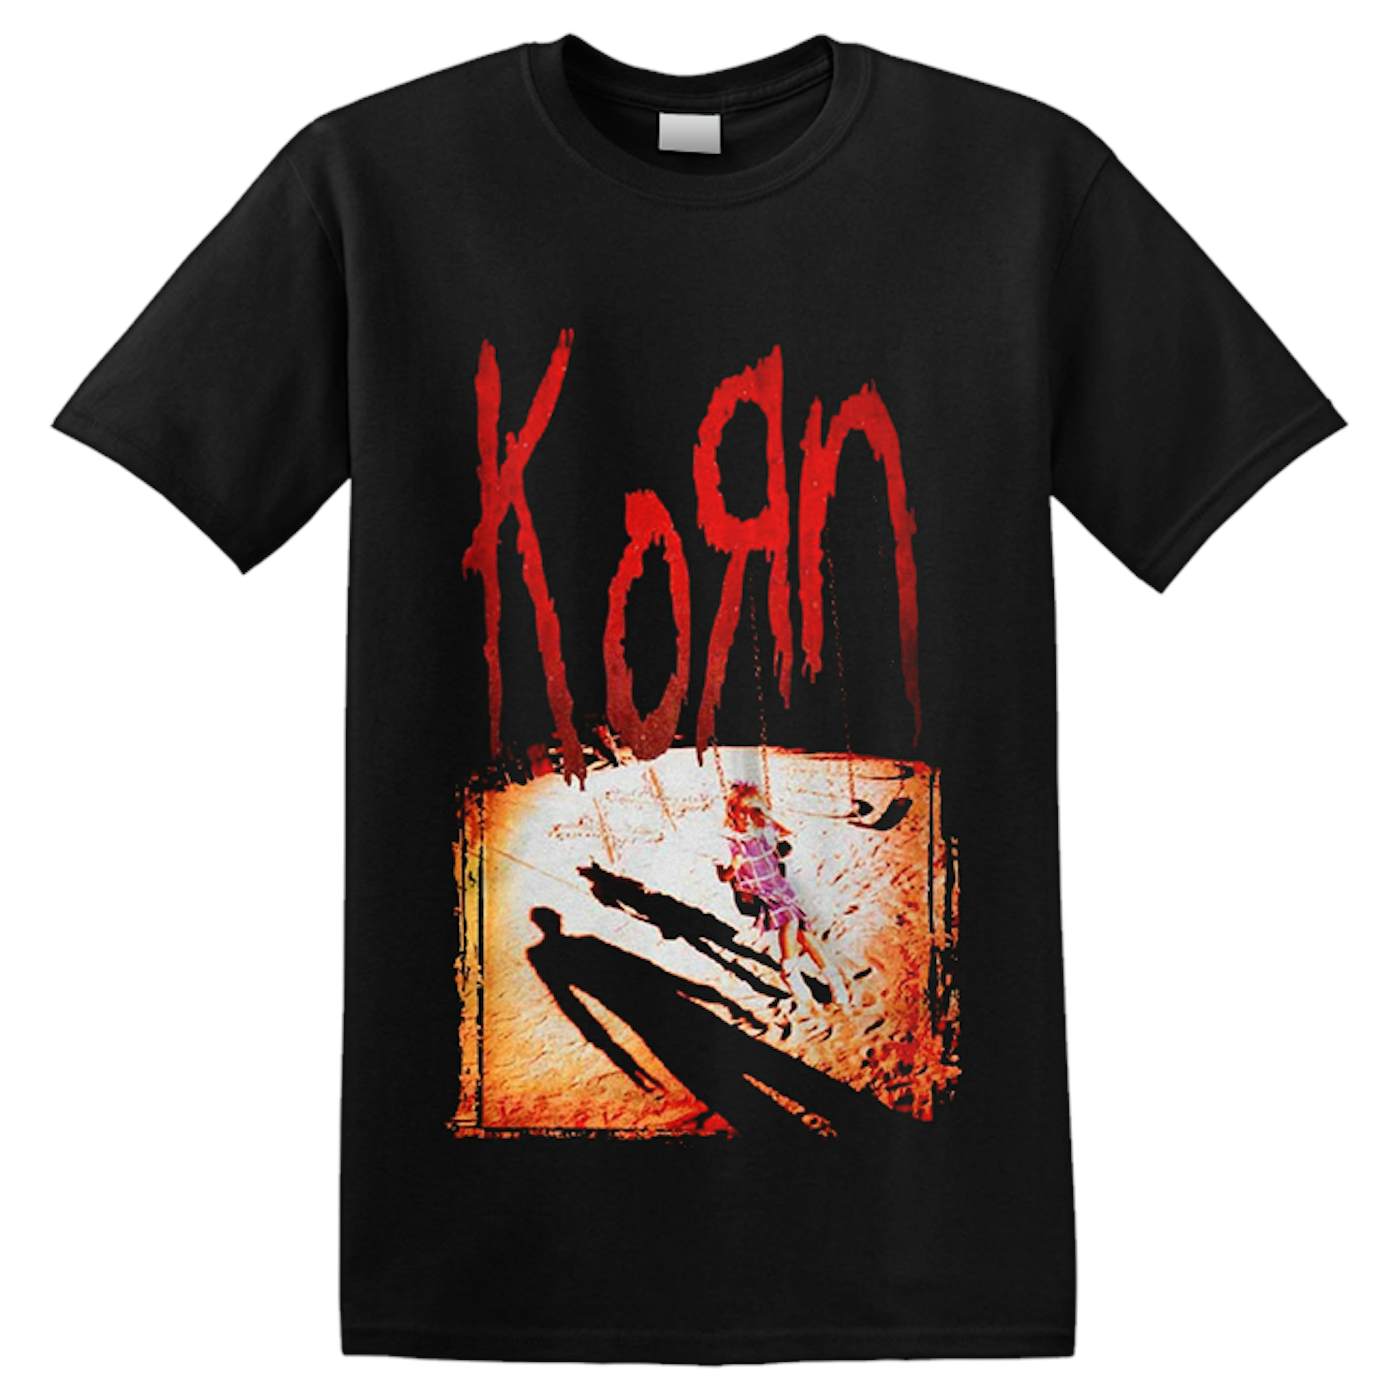 KORN - 'Korn' T-Shirt